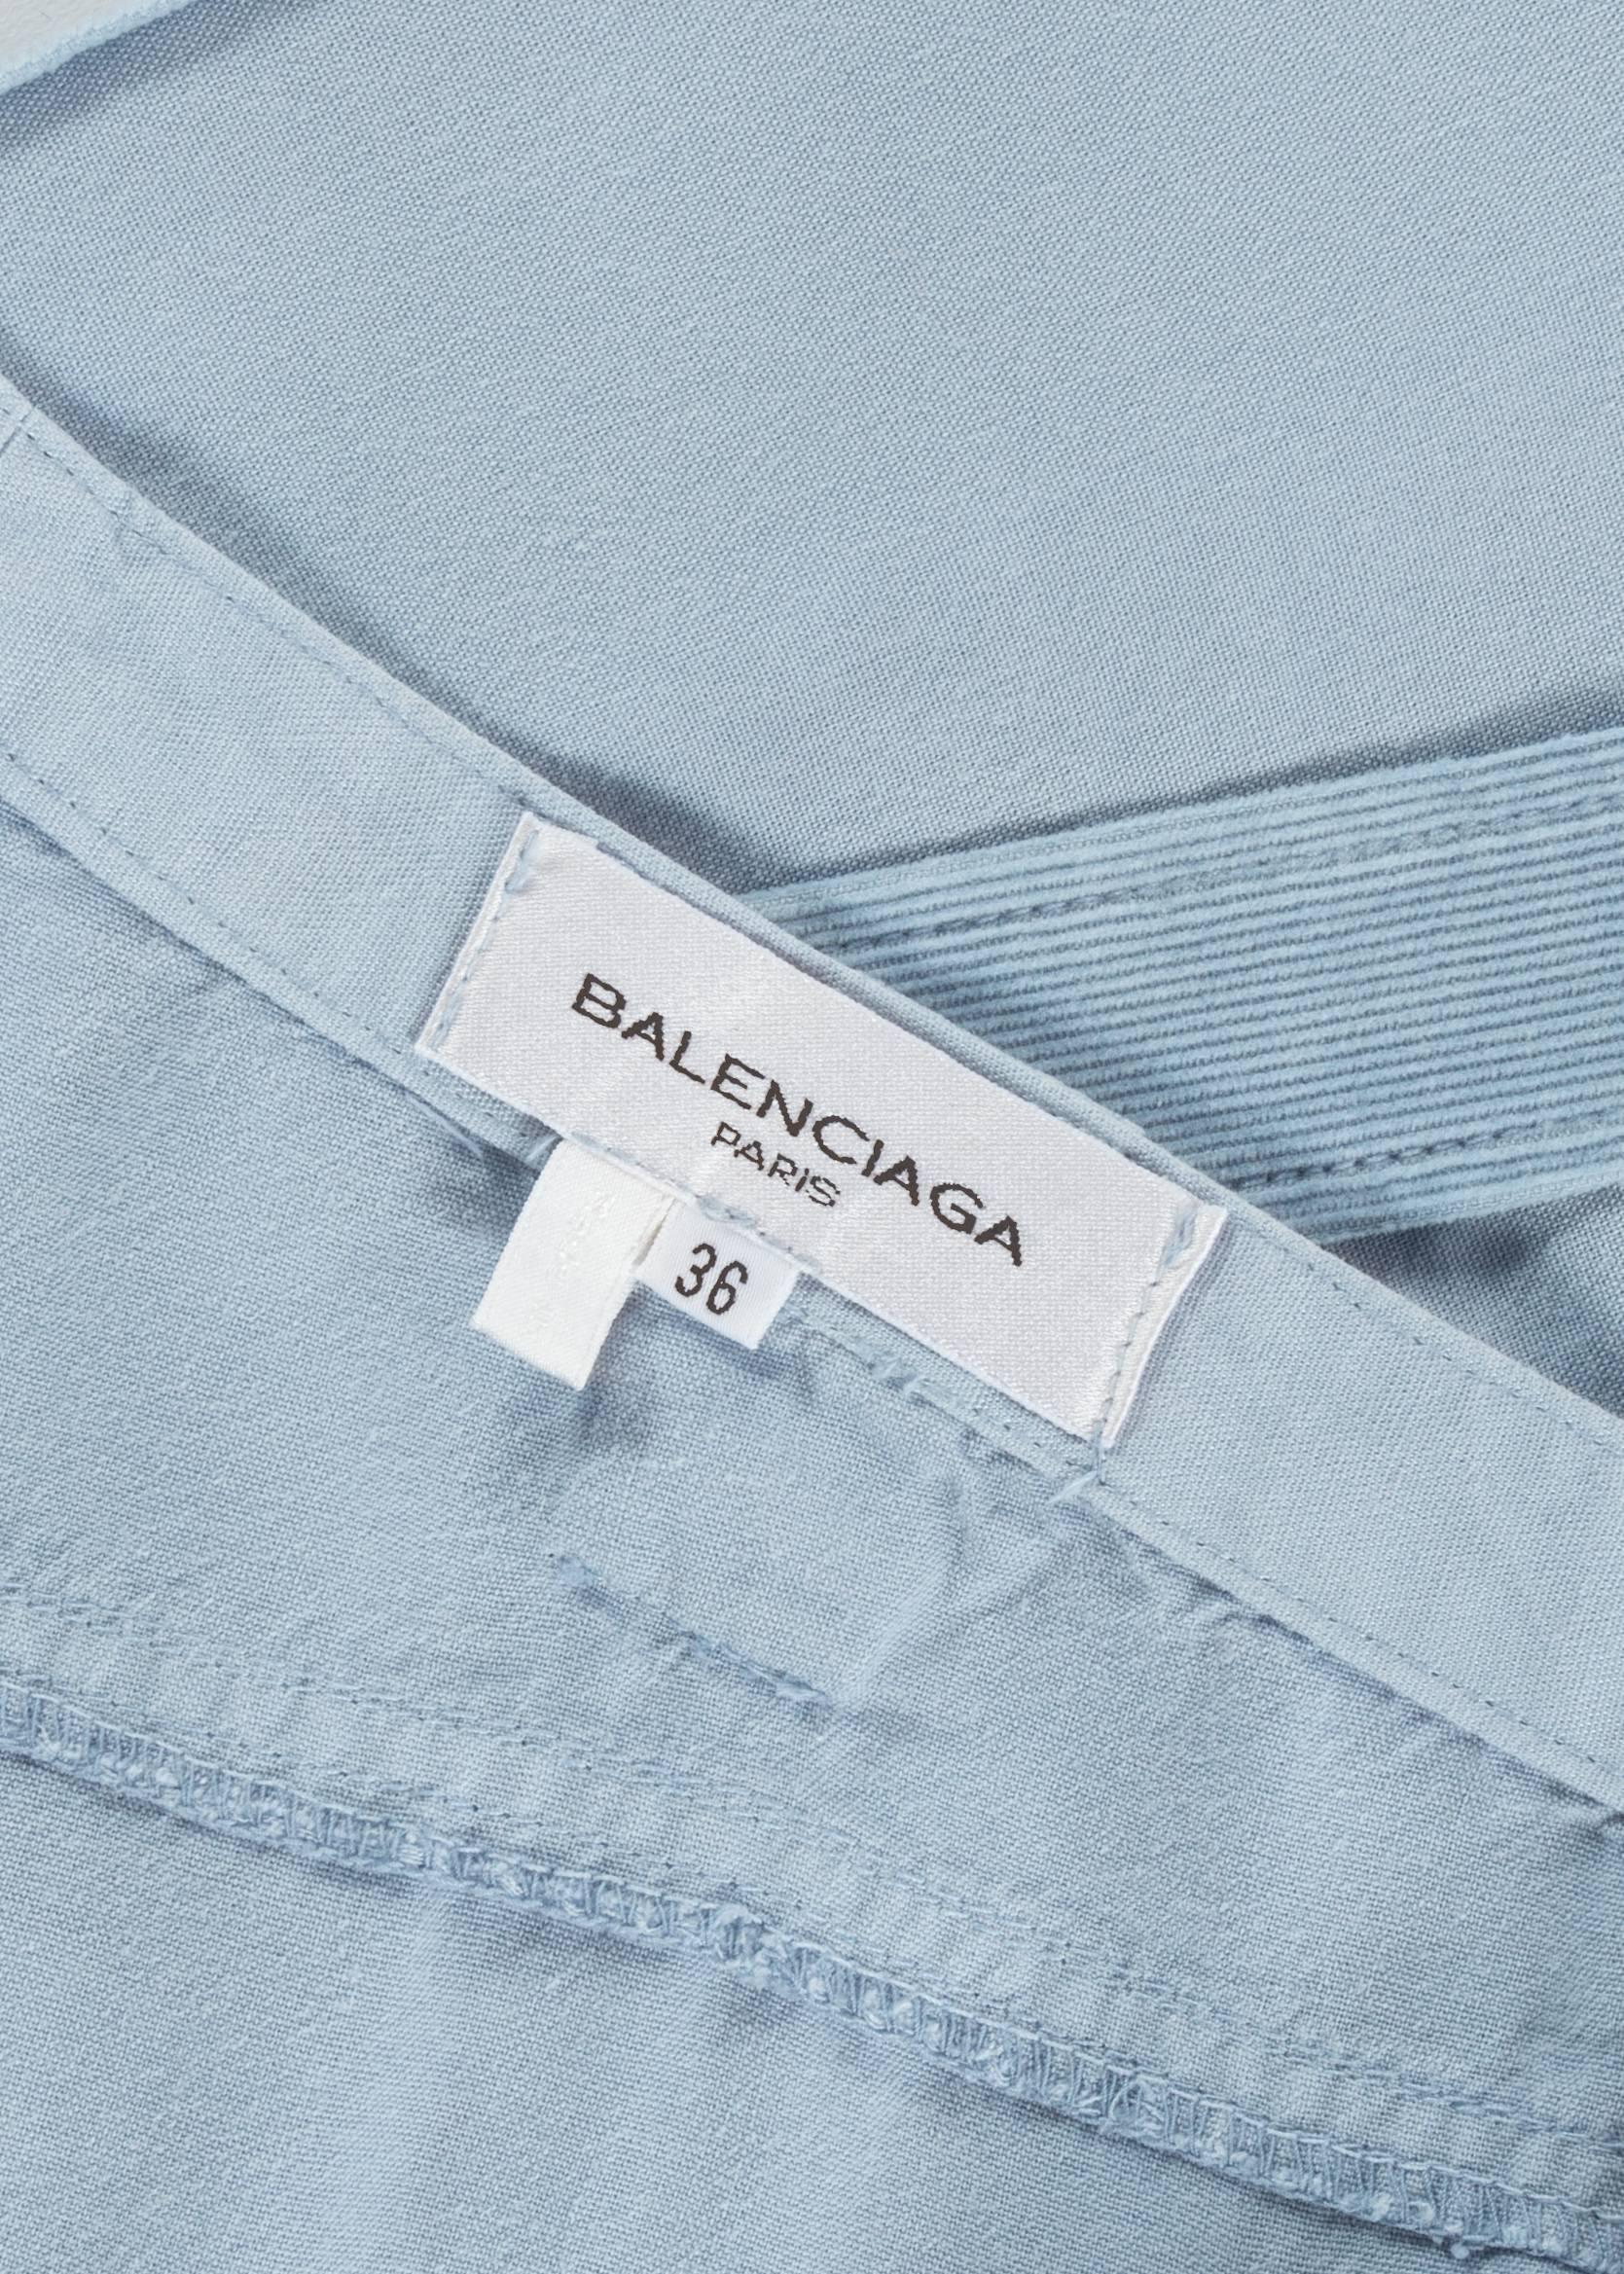 Balenciaga by Nicolas Ghesquière blue cotton and corduroy cargo pants, ss 2002 1